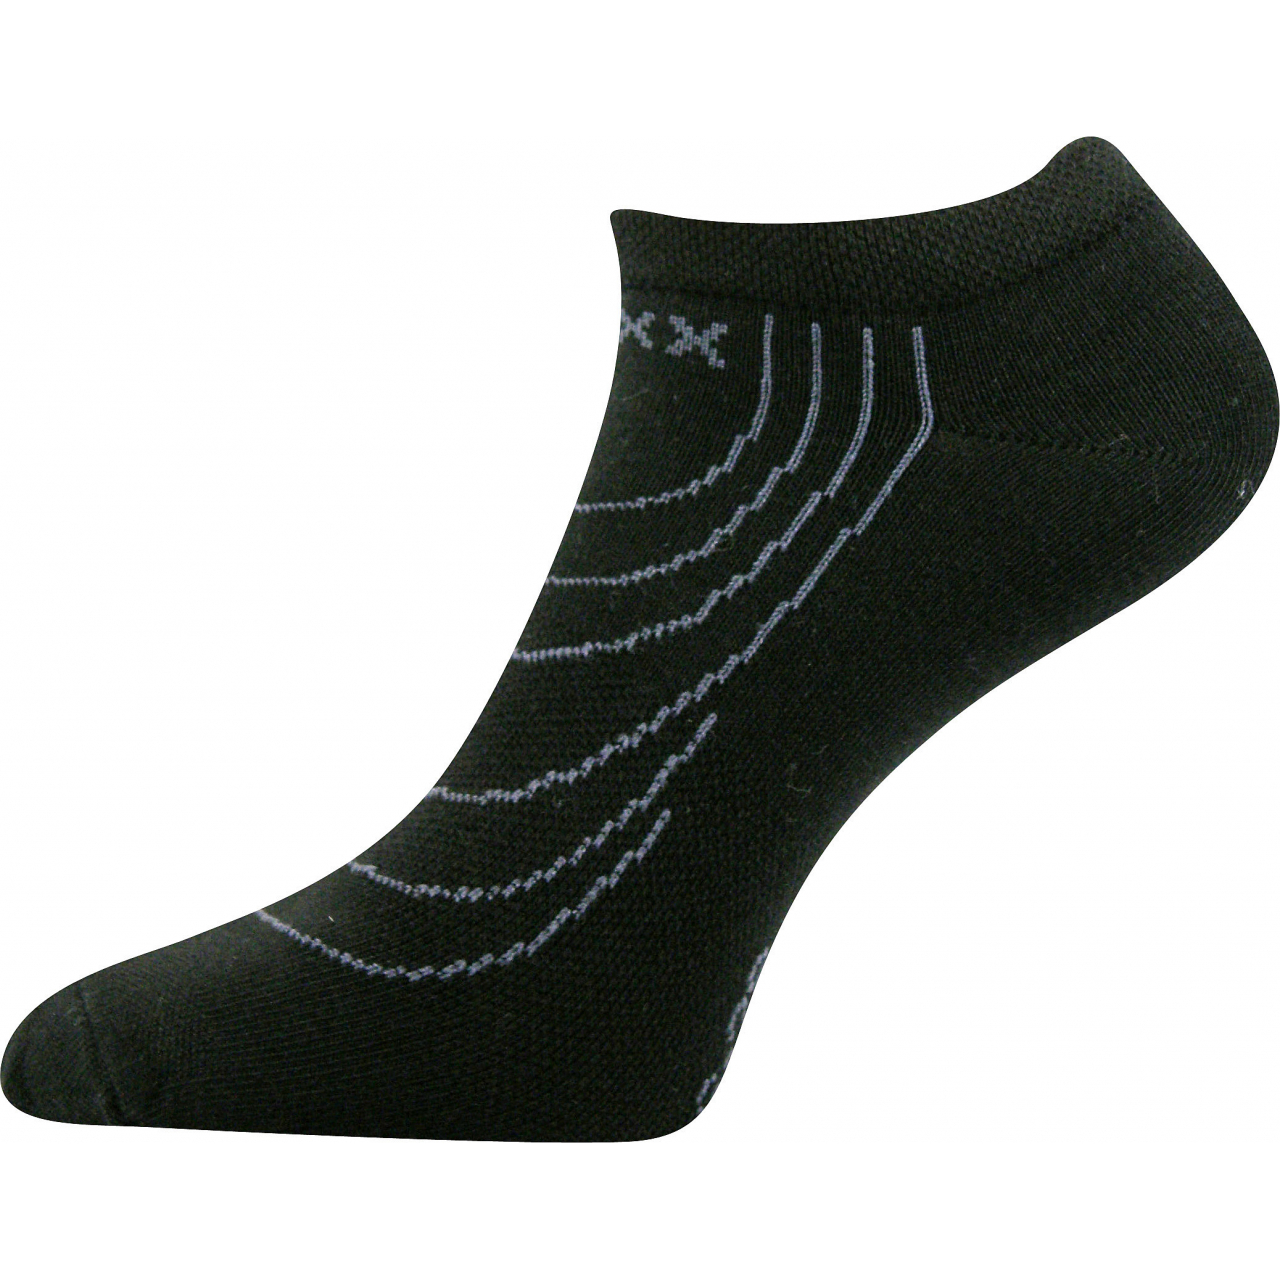 Ponožky nízké Voxx Rex - černé, 39-42